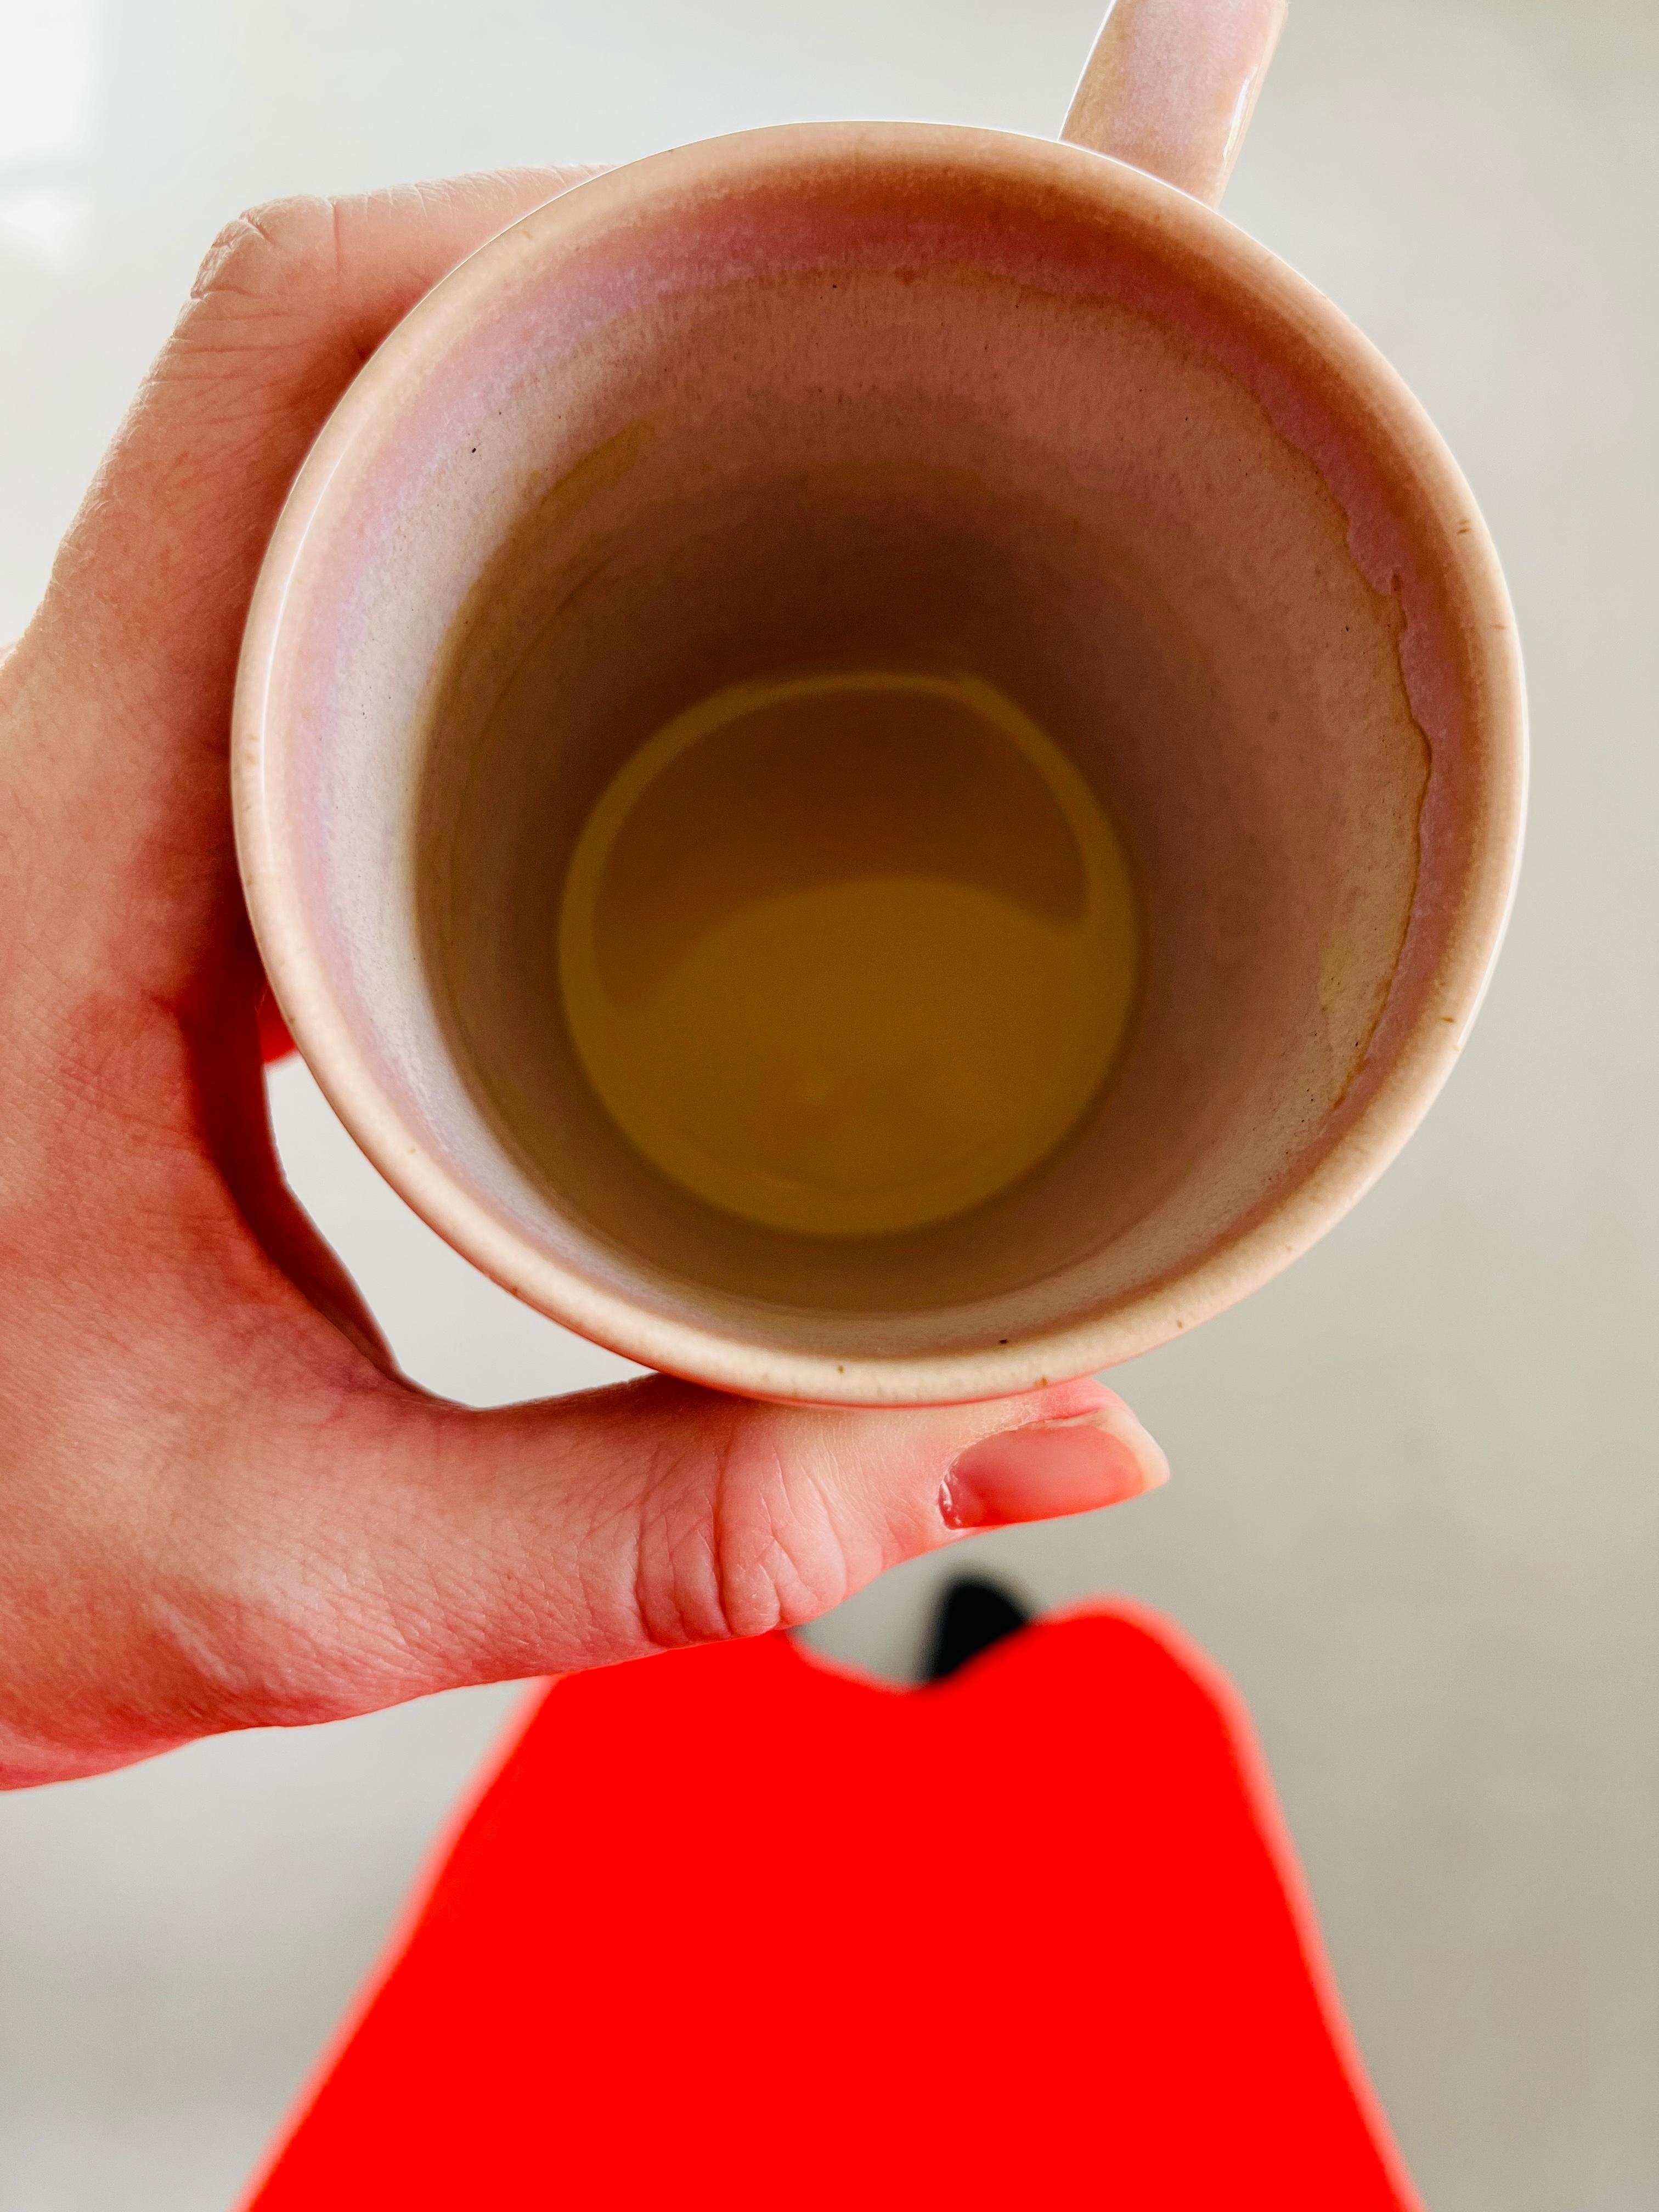 11.00h und der Kaffee ist schon wieder fast leer ☕️. Vielleicht noch ein Zweiter 🤔? #coffeelover #foodchallenge